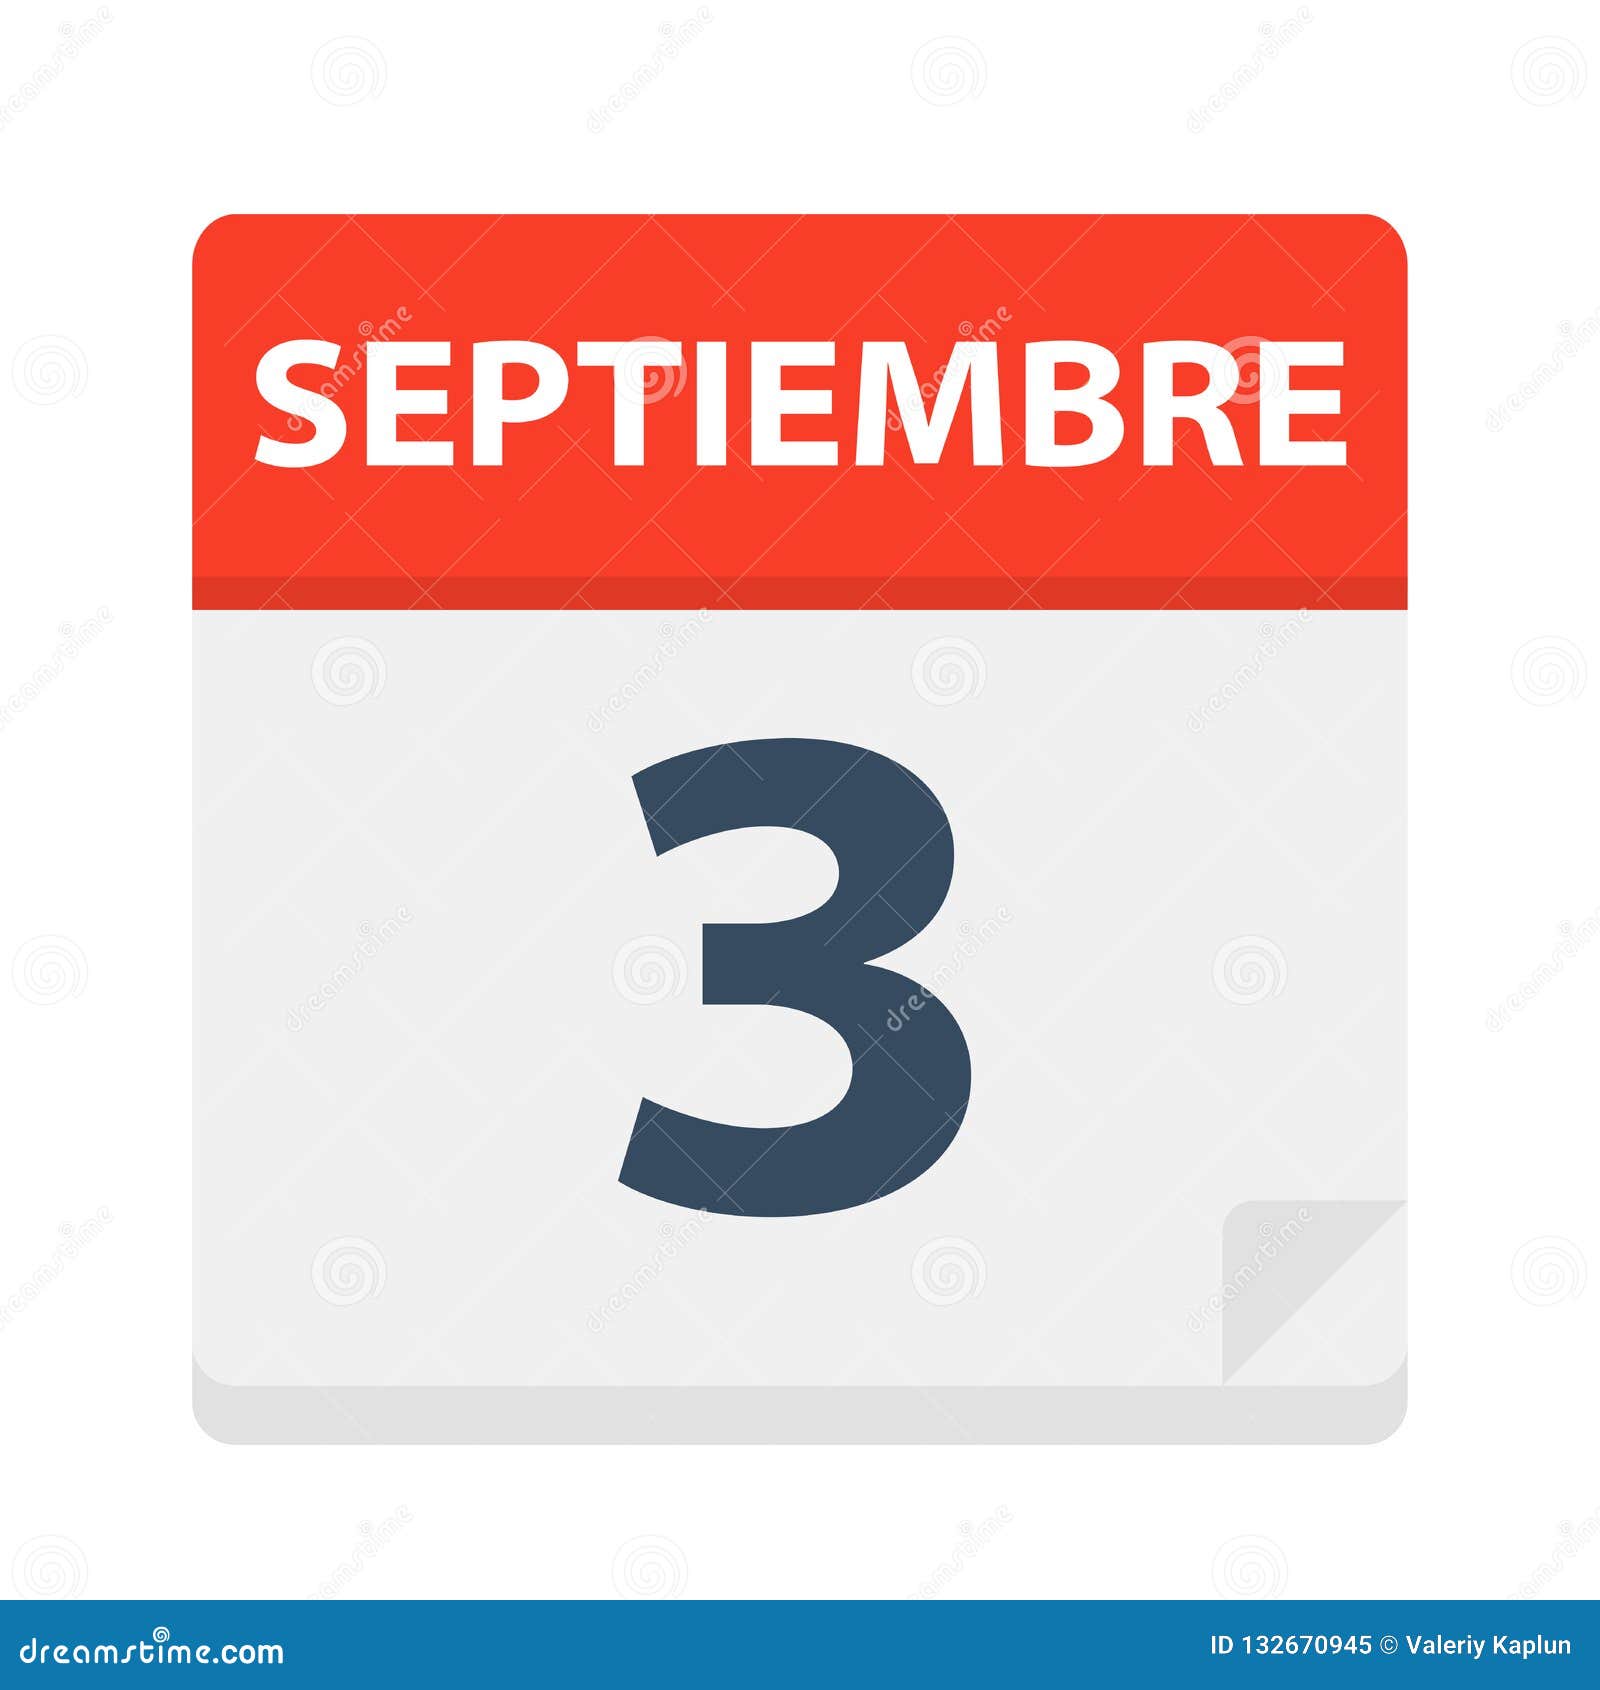 septiembre 3 - calendar icon - september 3.   of spanish calendar leaf